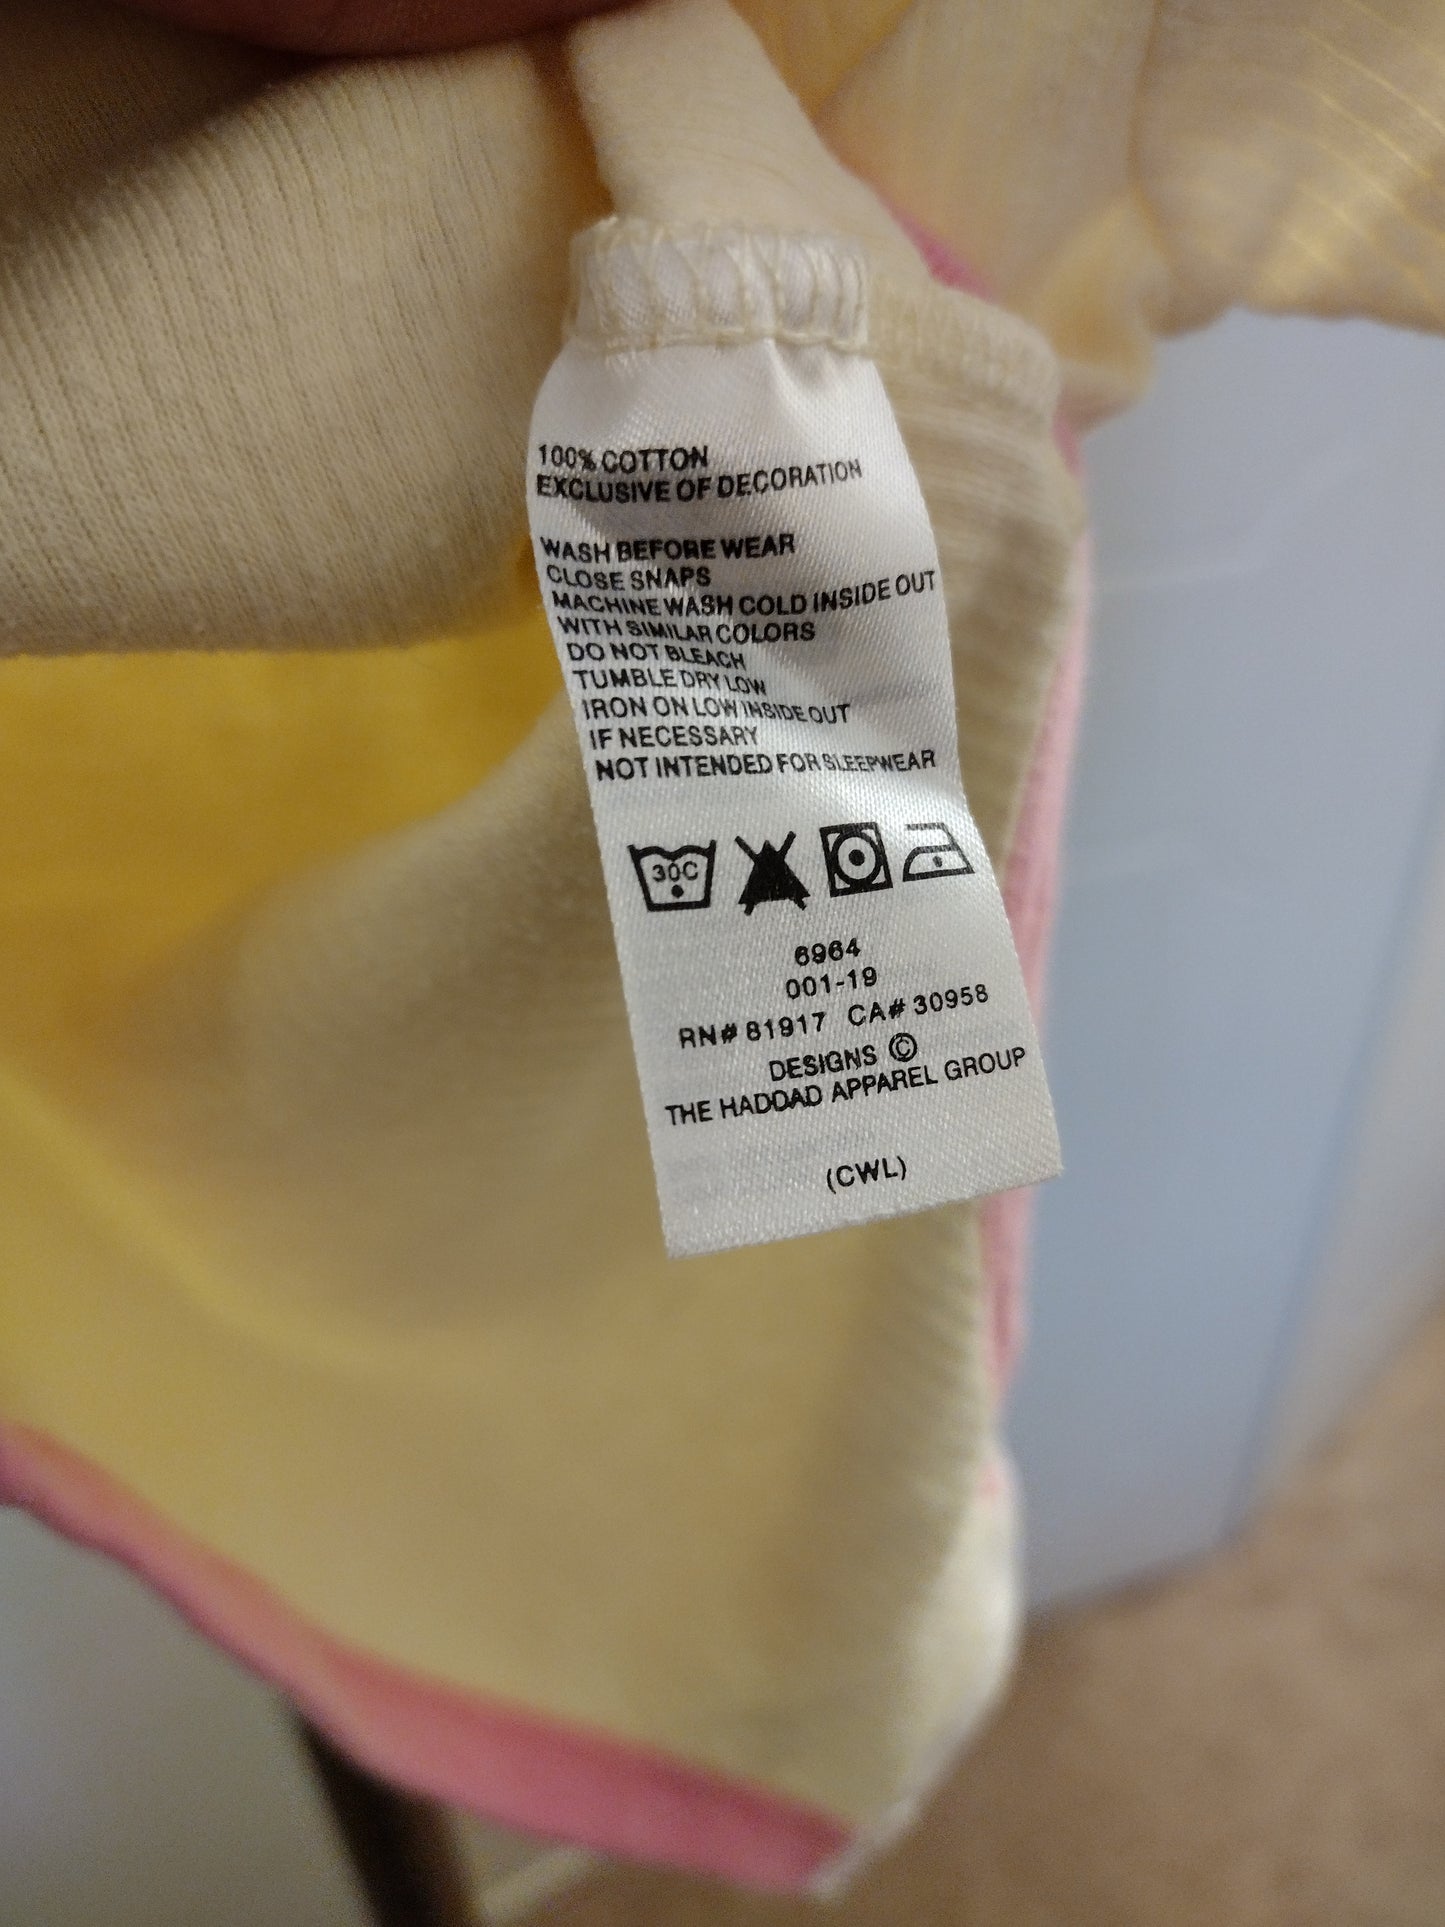 Nike Baby Girls Onesie Bodysuit -0/3 months